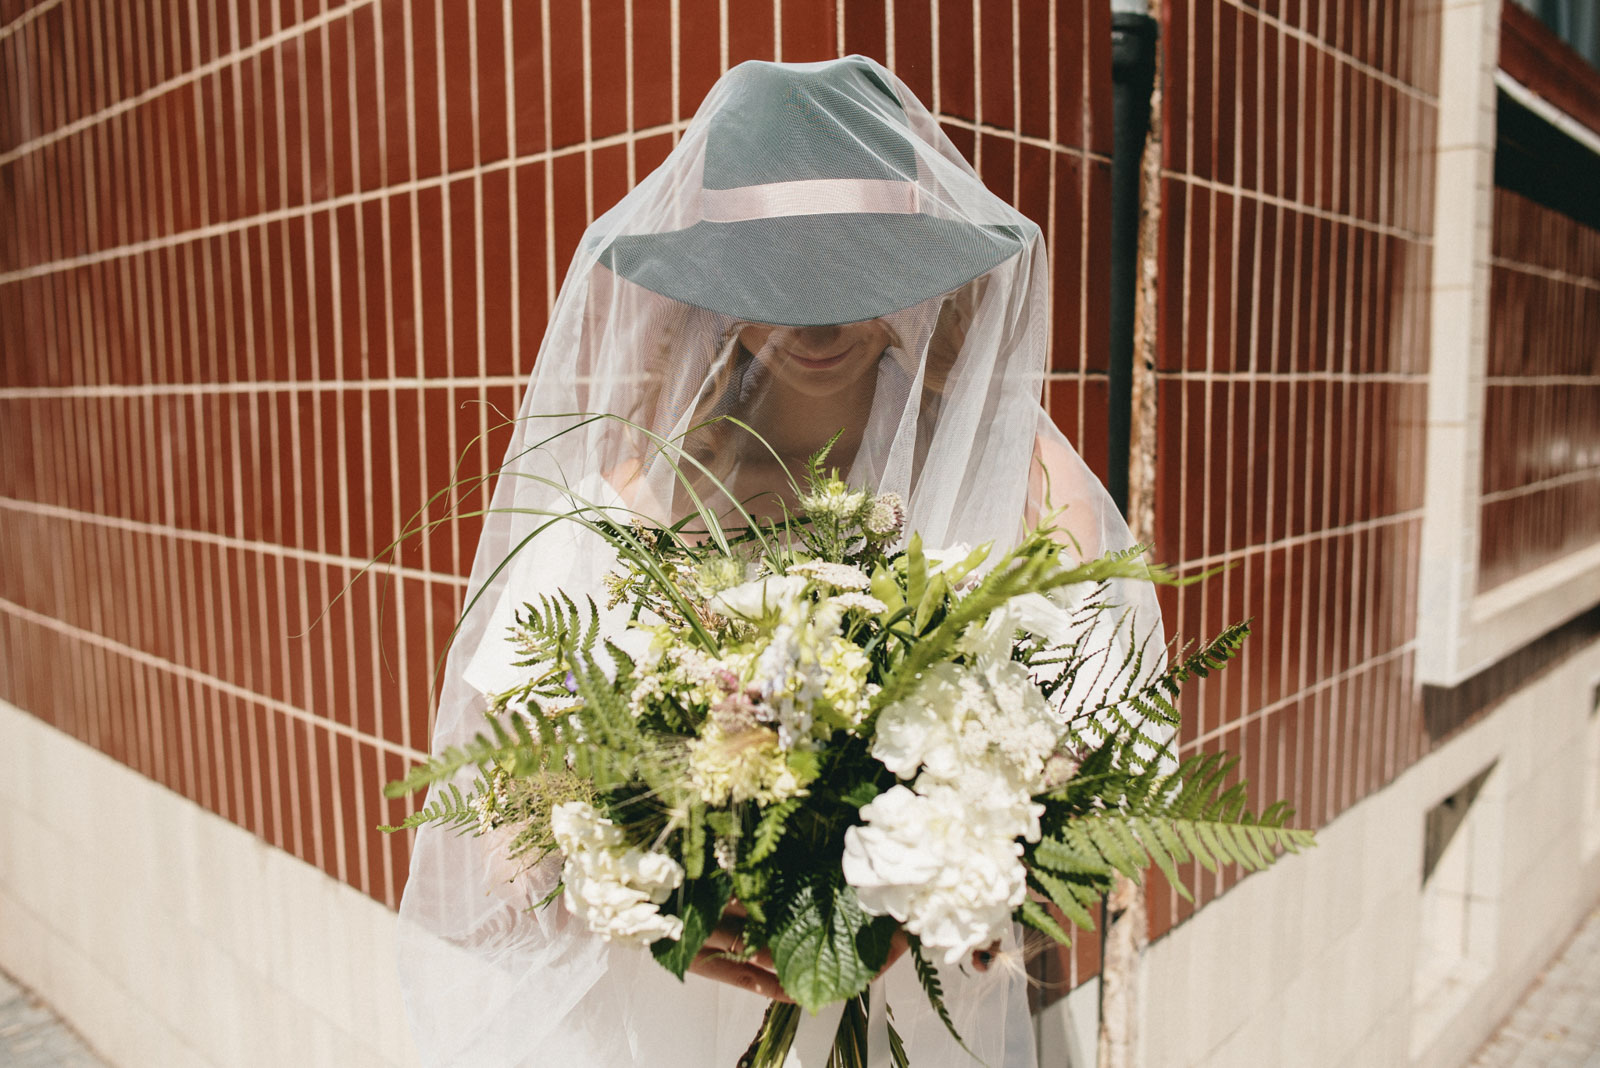 nevěsta zahalená do závoje drží svatební kytici z lučního kvítí a kapradin